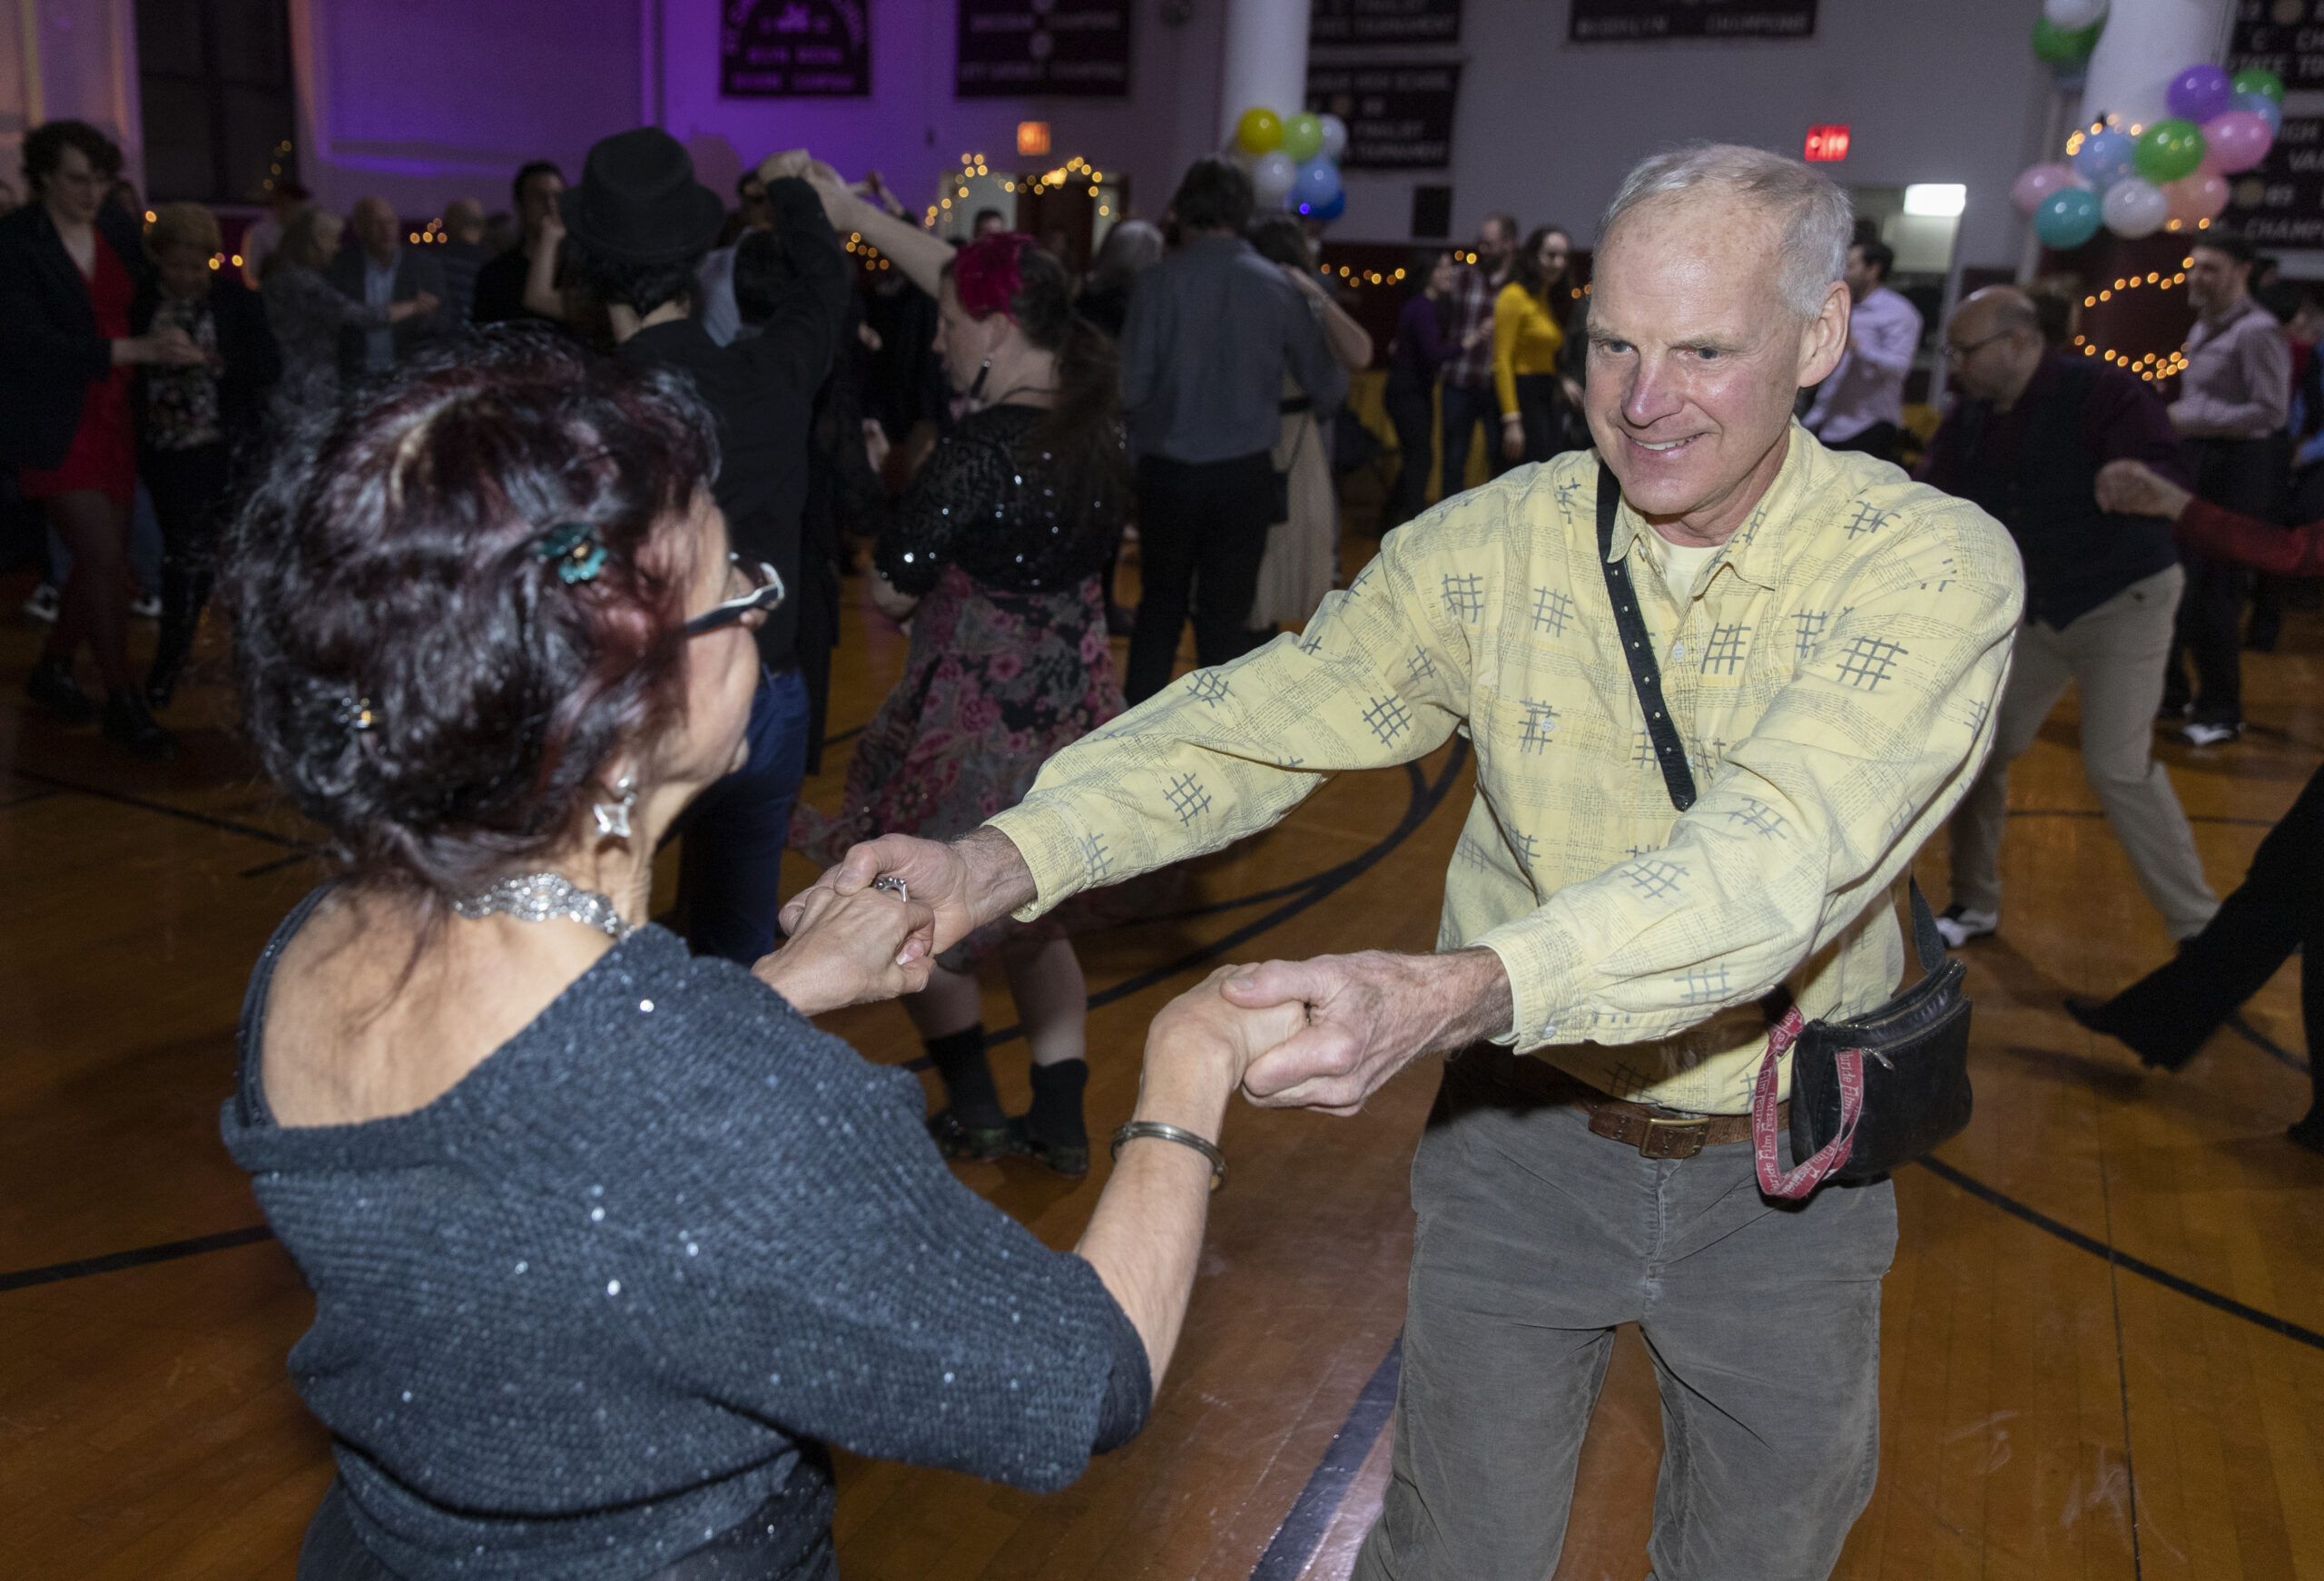 Steve Vaubel Dancing with Anita Vaubel at BCCO swing gala.